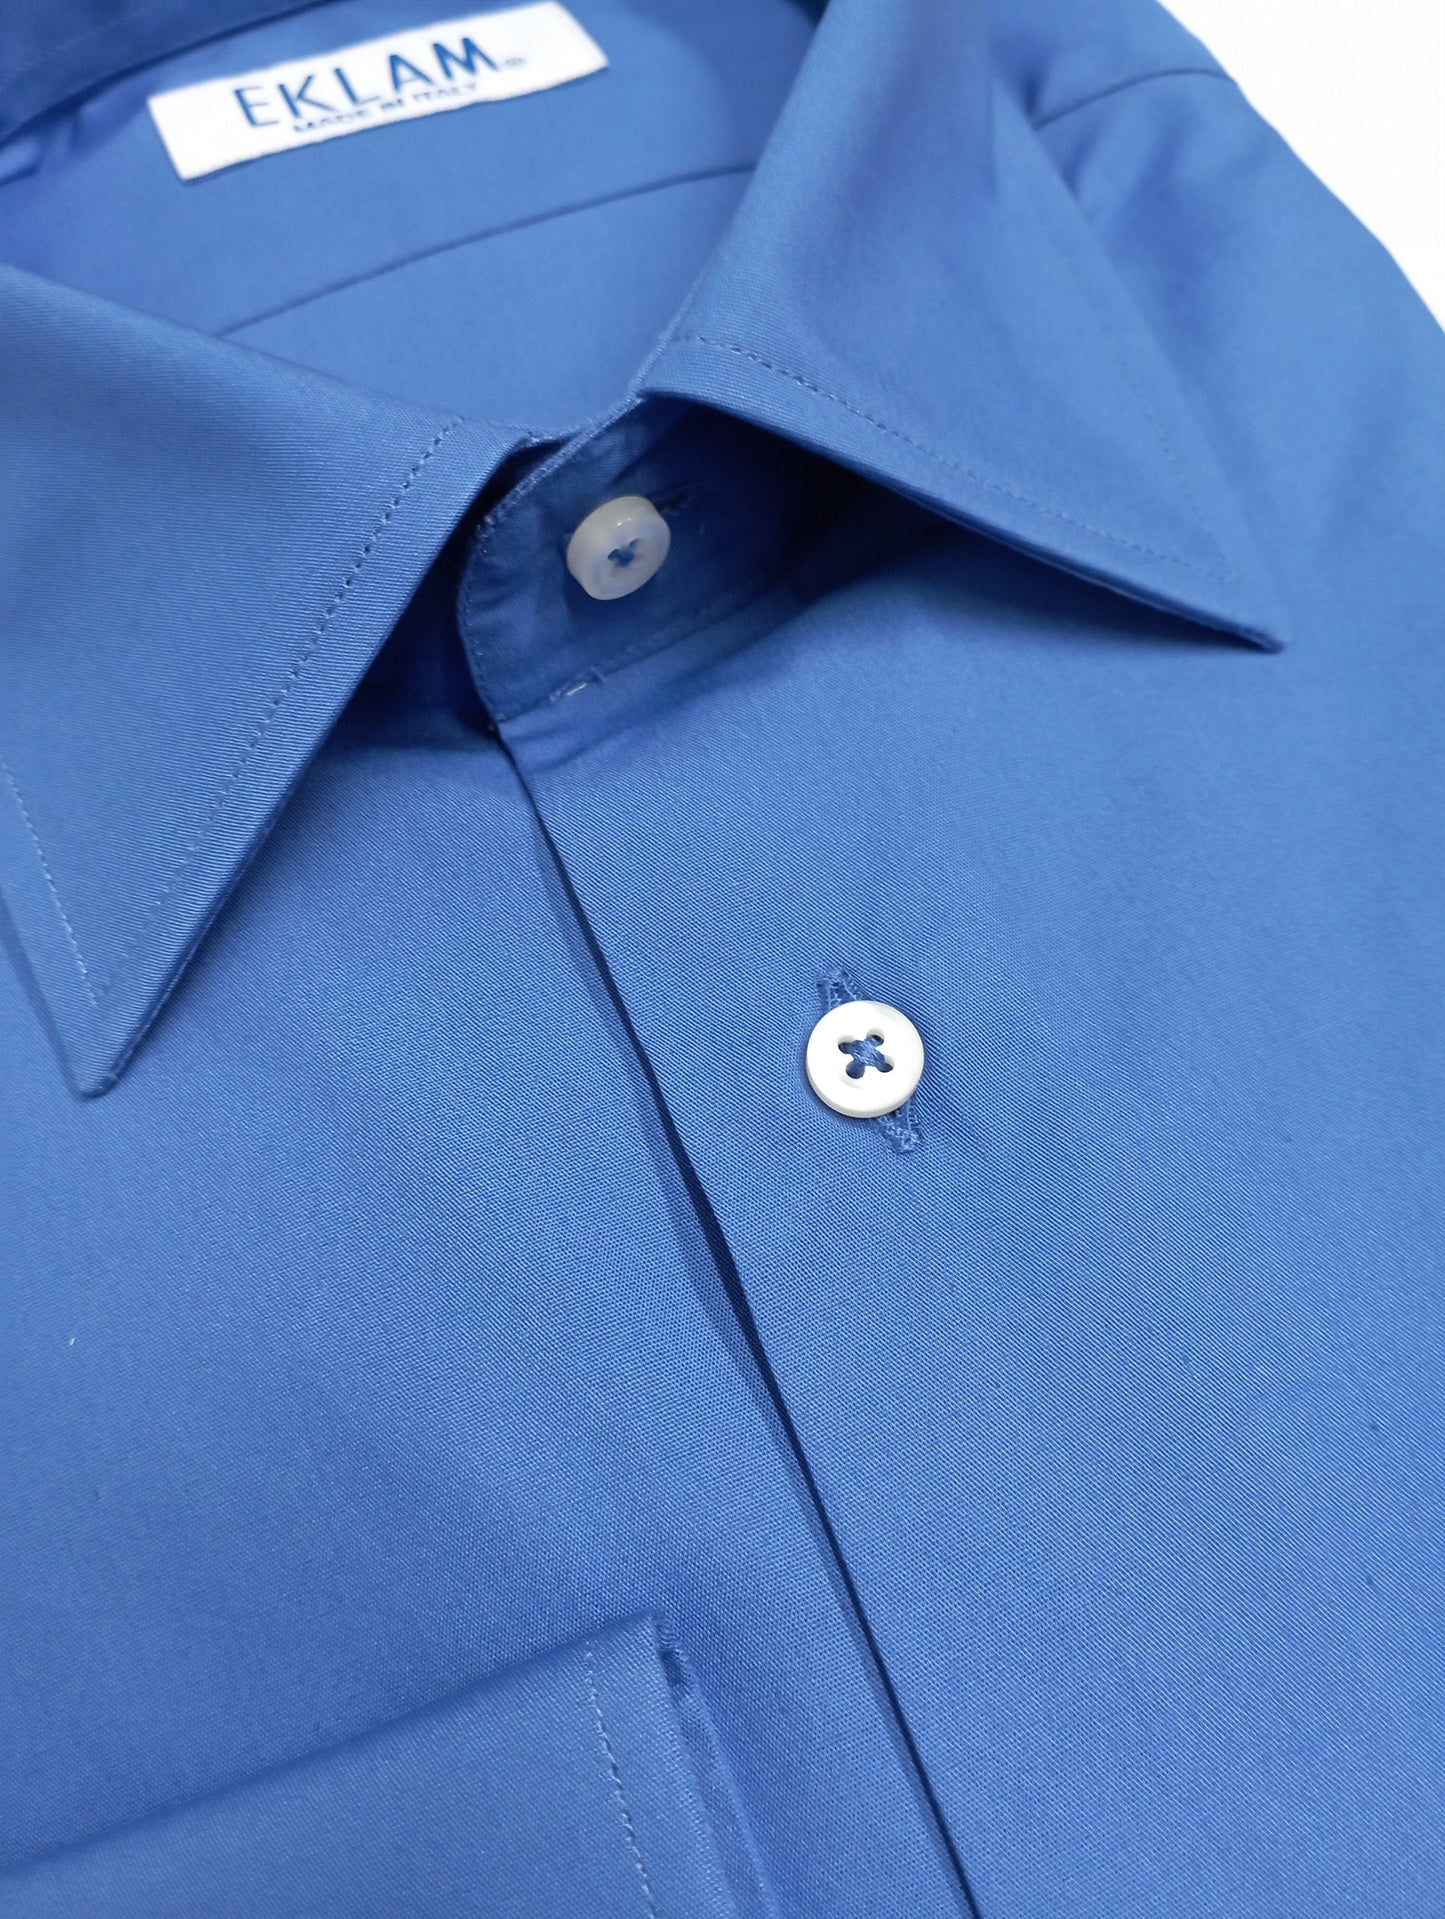 Camicia uomo con colletto francese Blu elettrico shock